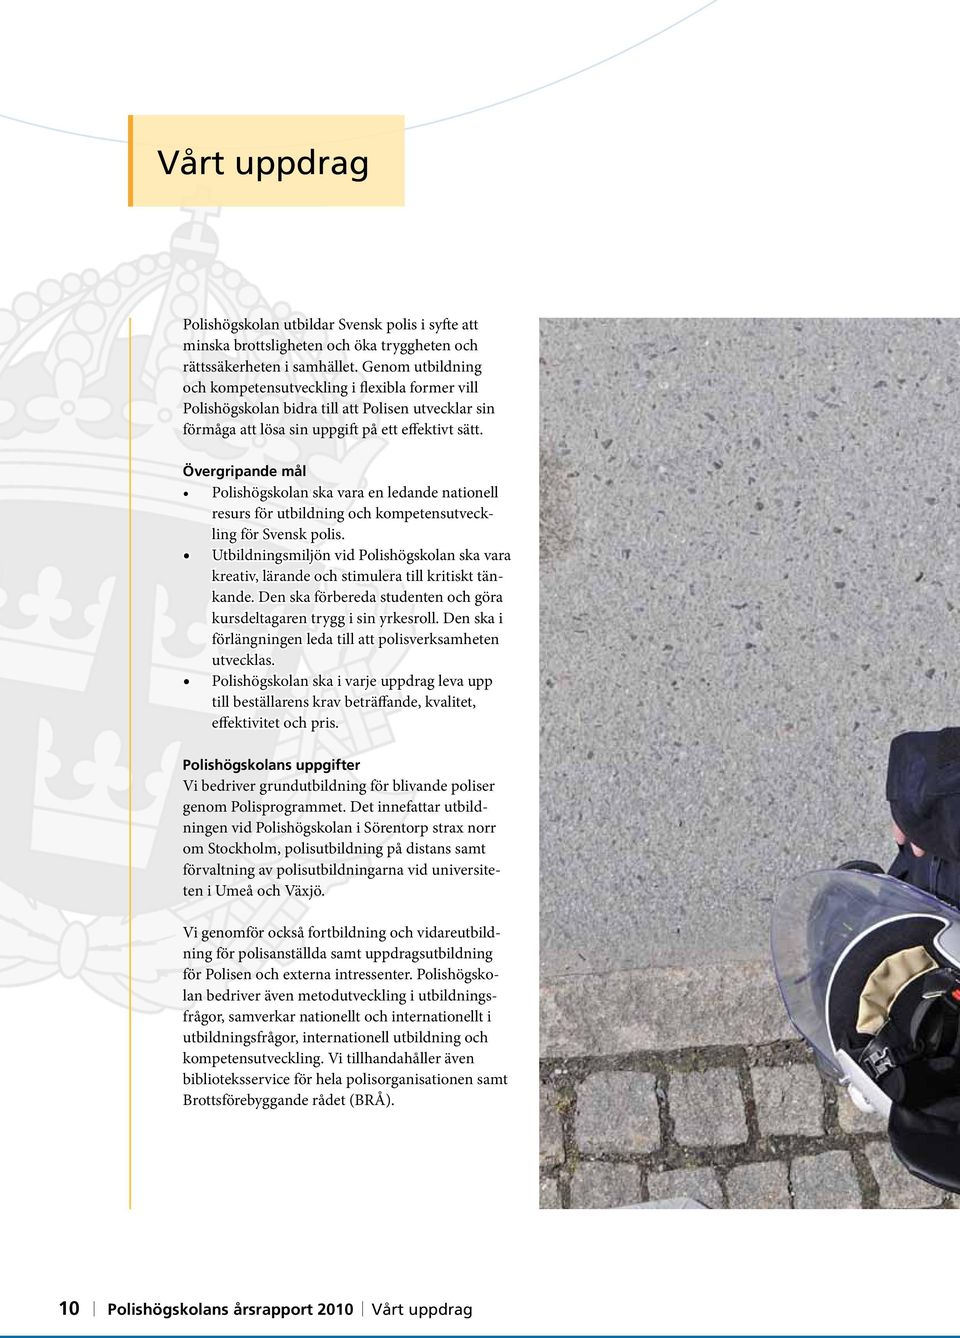 Övergripande mål Polishögskolan ska vara en ledande nationell resurs för utbildning och kompetensutveckling för Svensk polis.